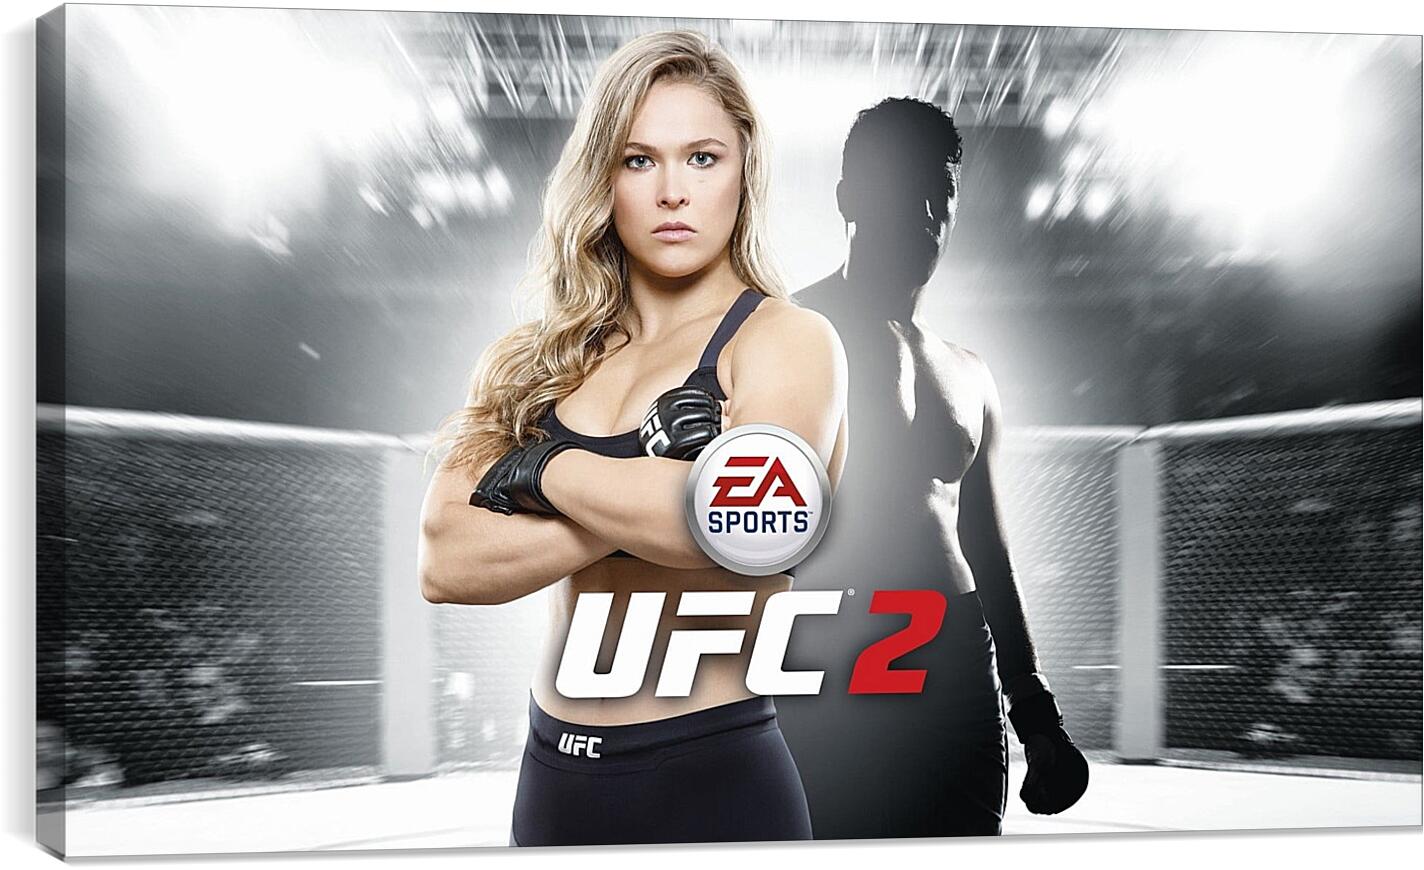 Постер и плакат - UFC. Ронда Роузи. EA Sports